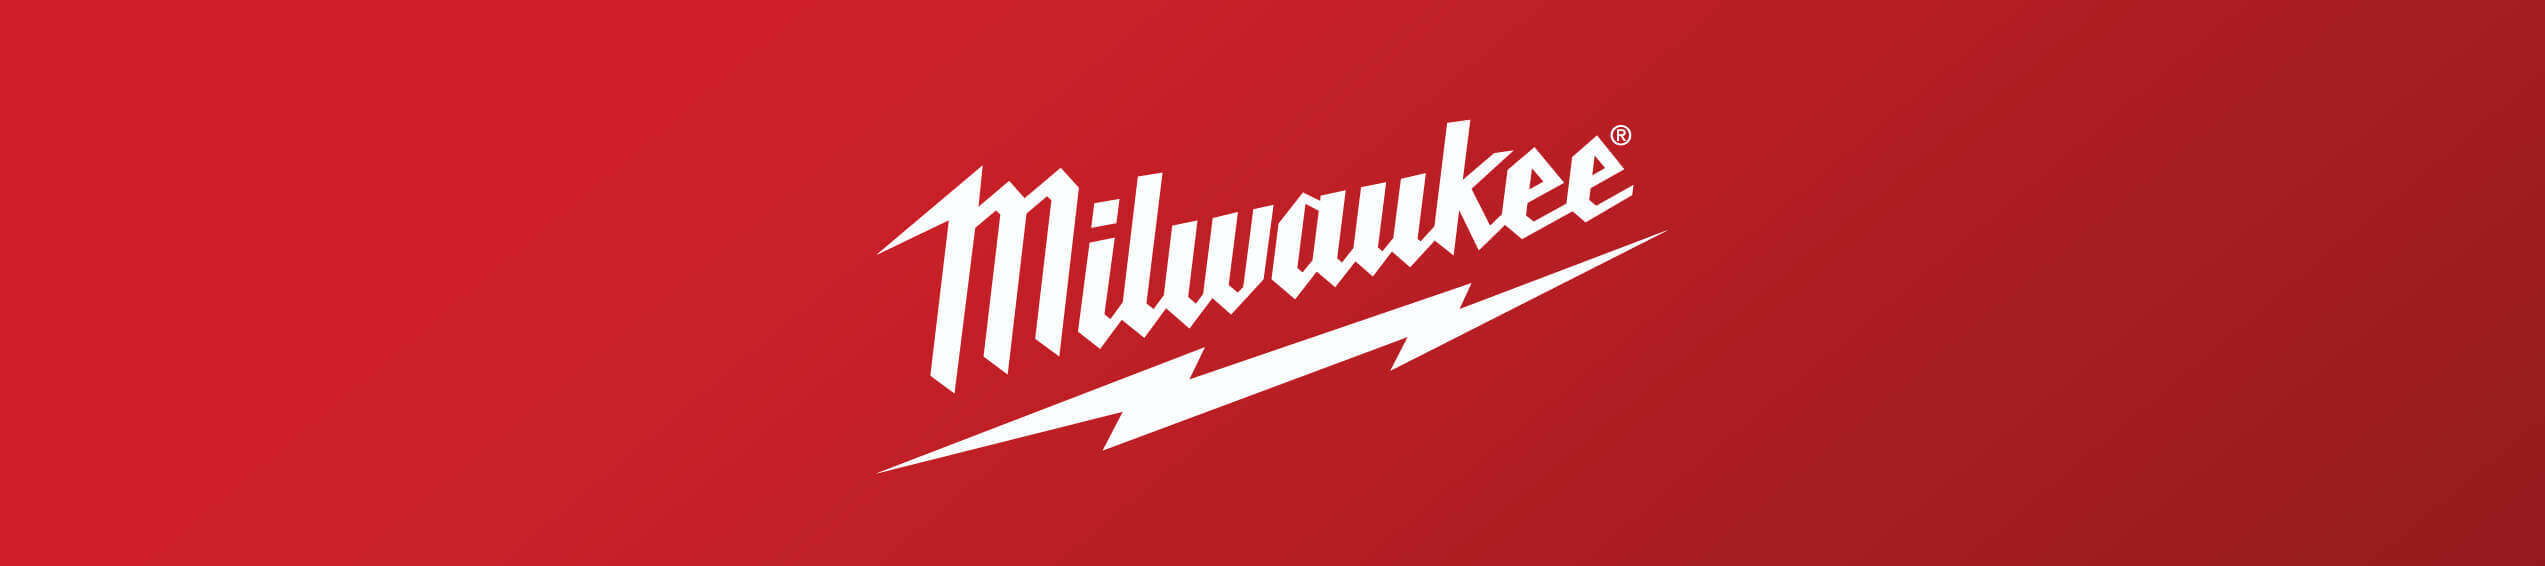 Milwaukee store banner